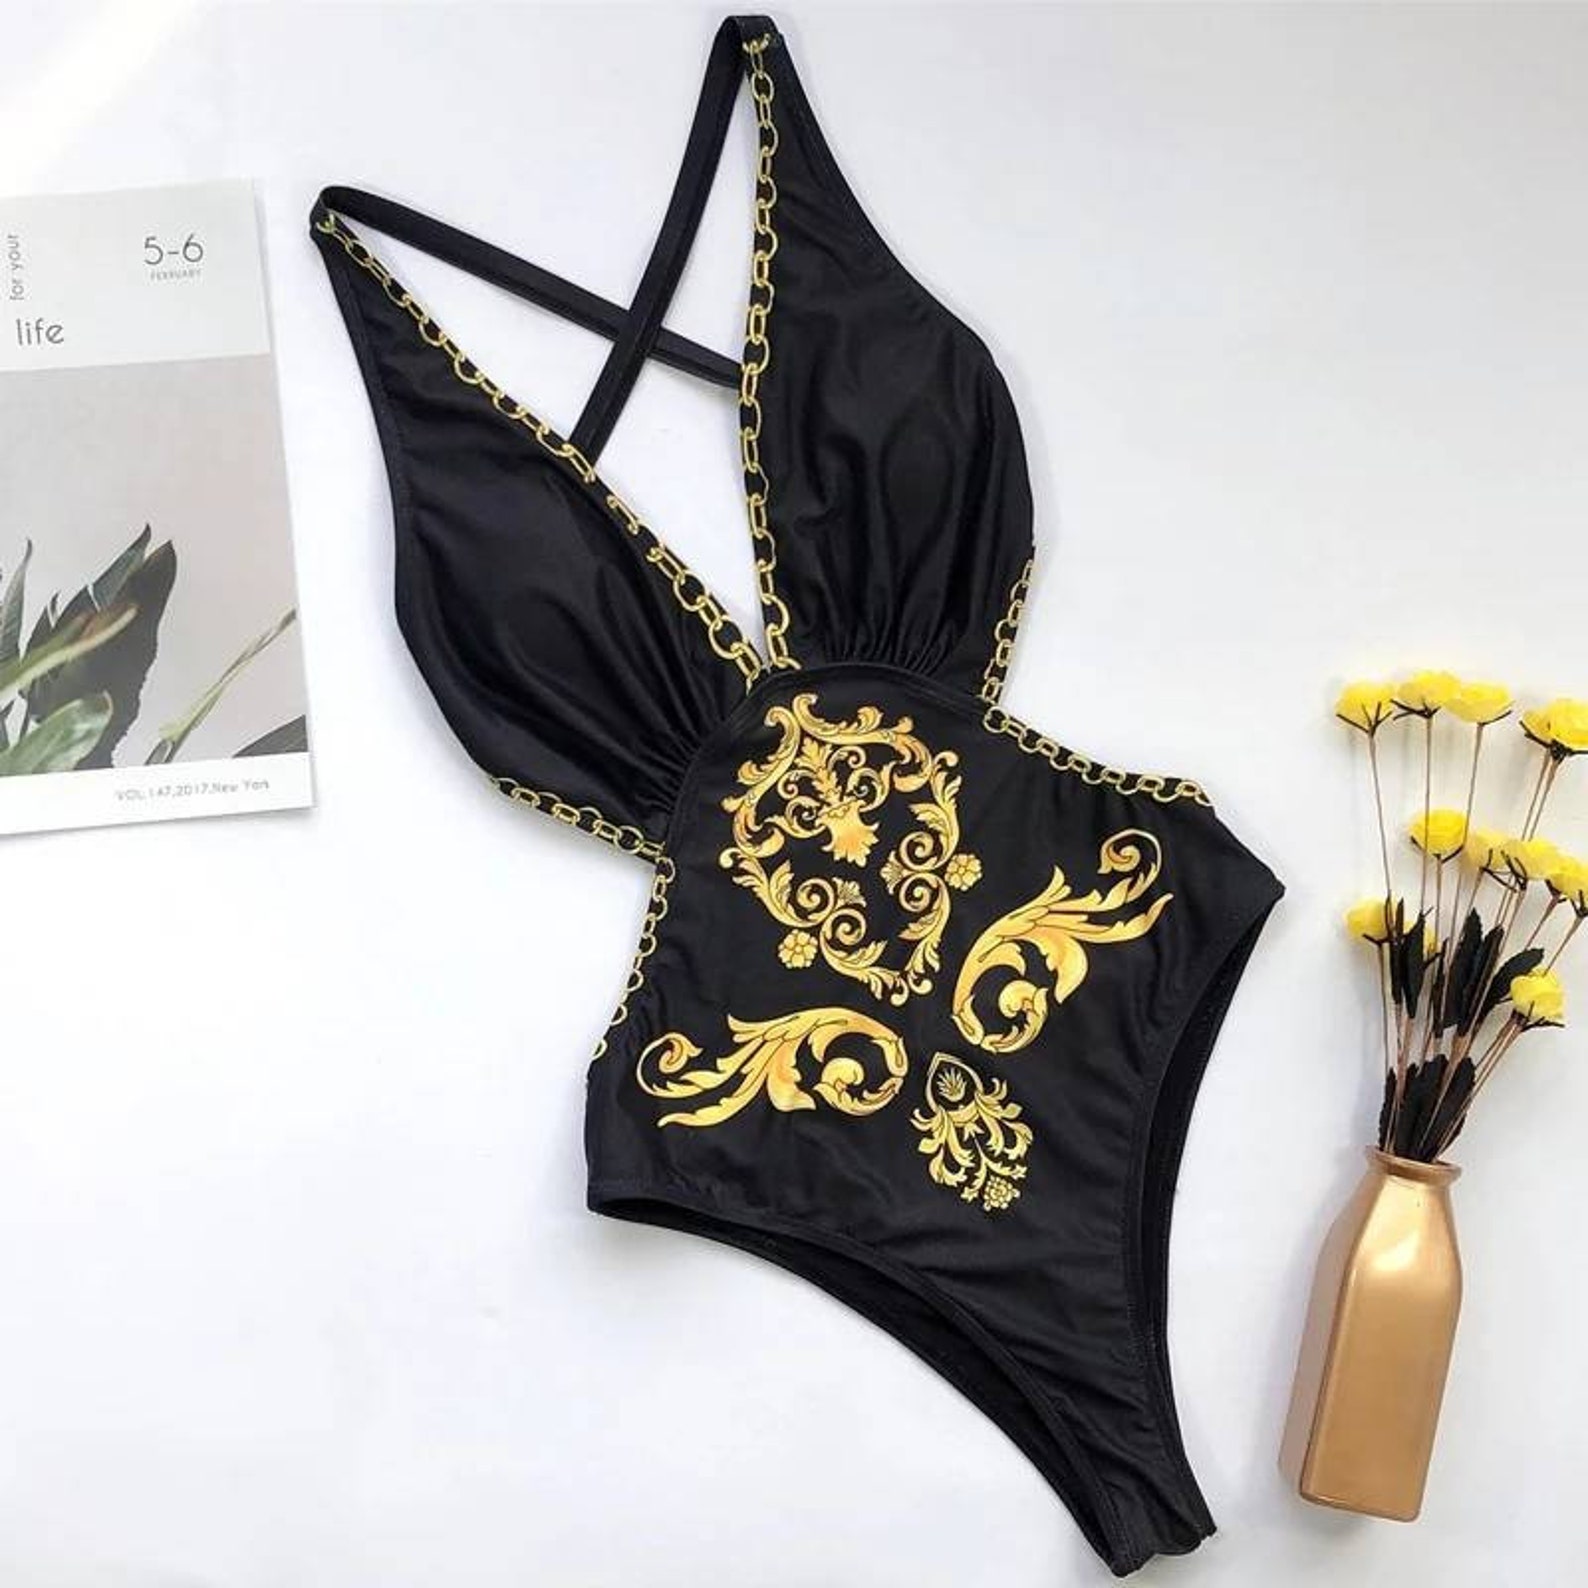 Beautiful Black and Gold Monokini Swimsuit One Piece Ibiza | Etsy UK